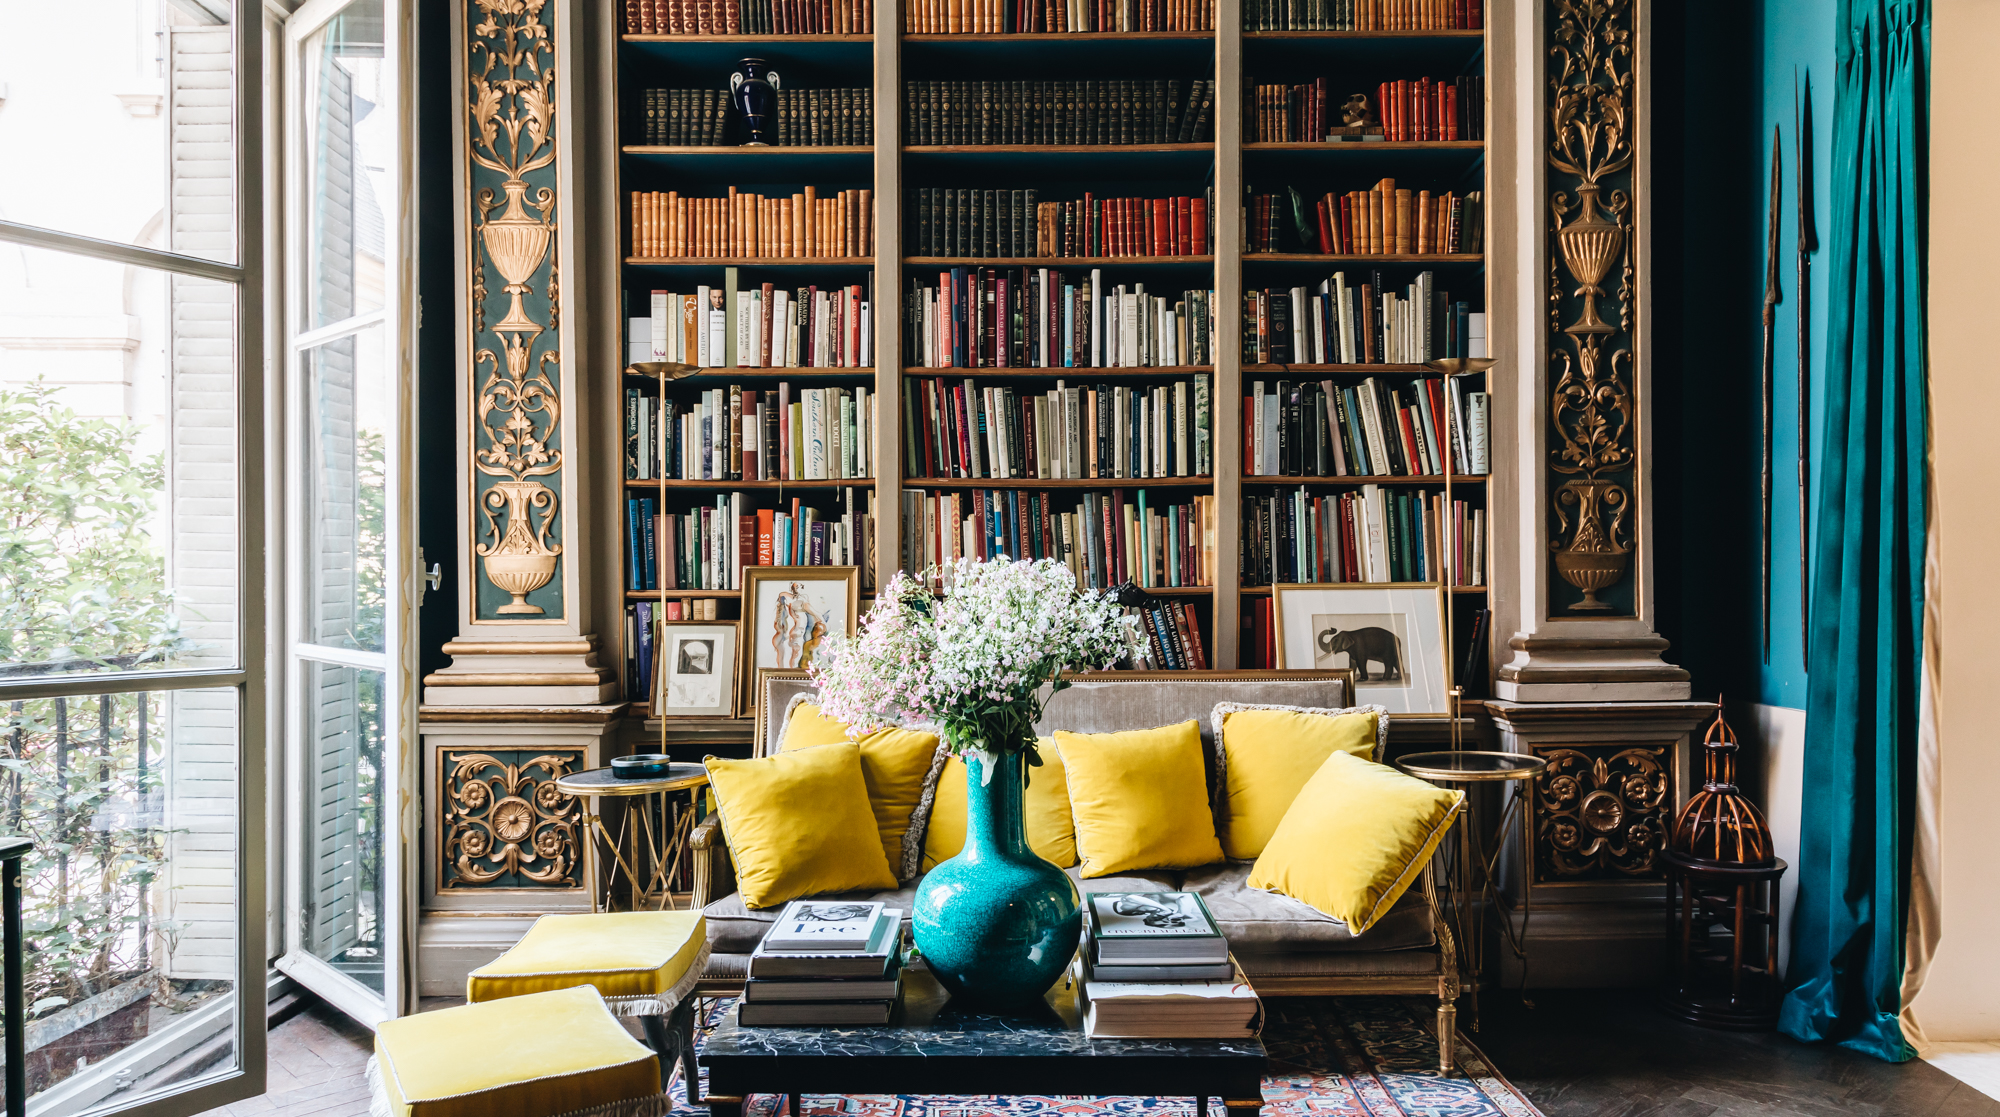 The Best Interior Design Books of 2021